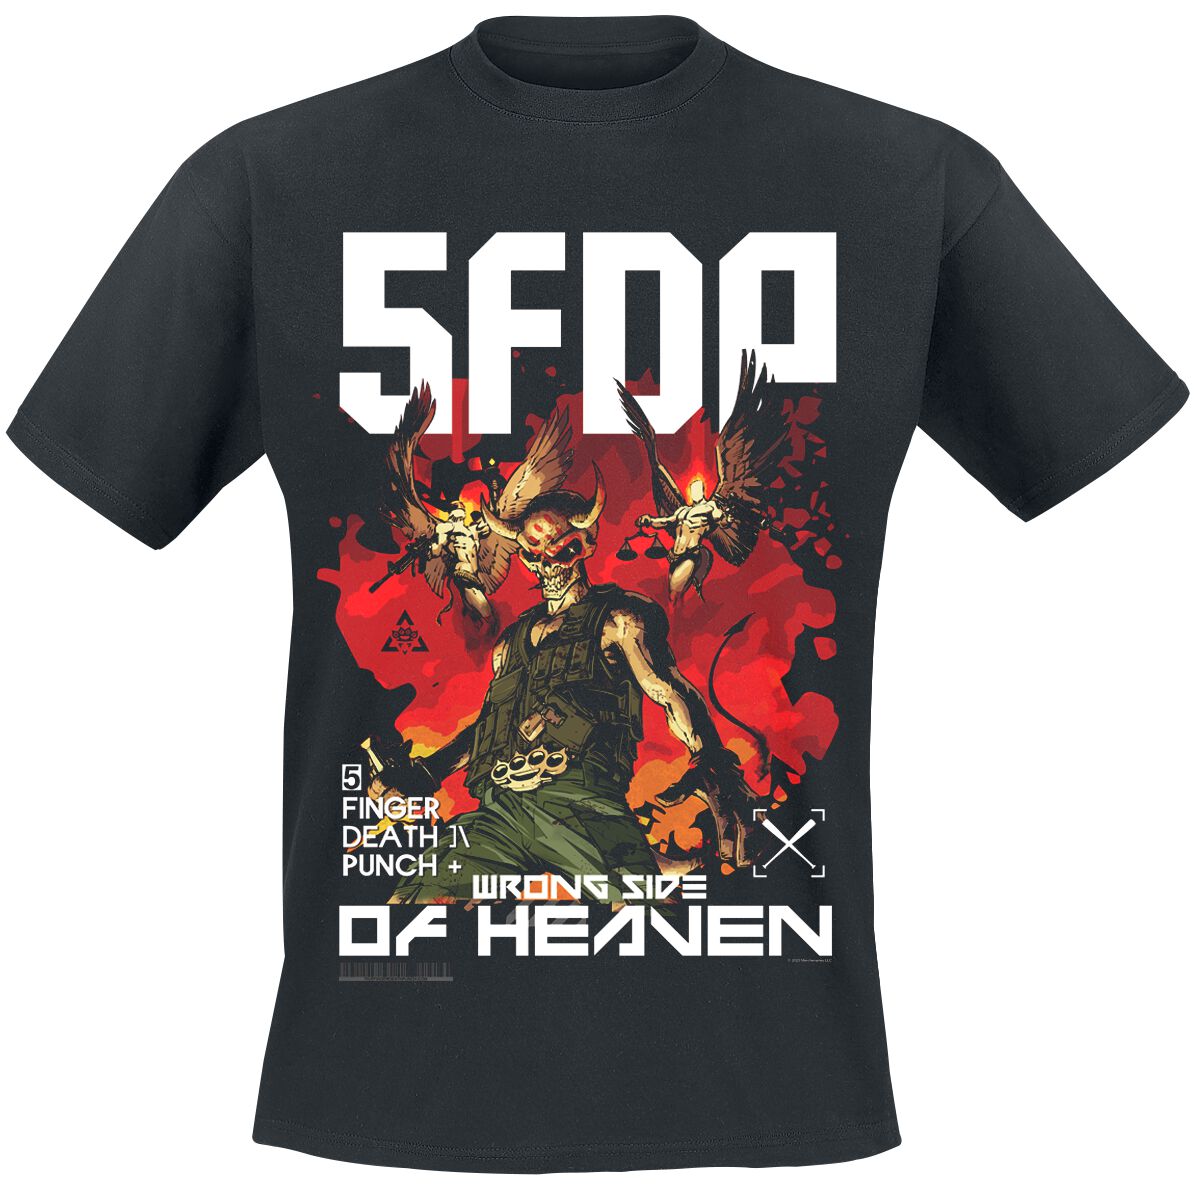 Five Finger Death Punch T-Shirt - Anniversary Wrong Side Of Heaven - S bis 3XL - für Männer - Größe XXL - schwarz  - Lizenziertes Merchandise!